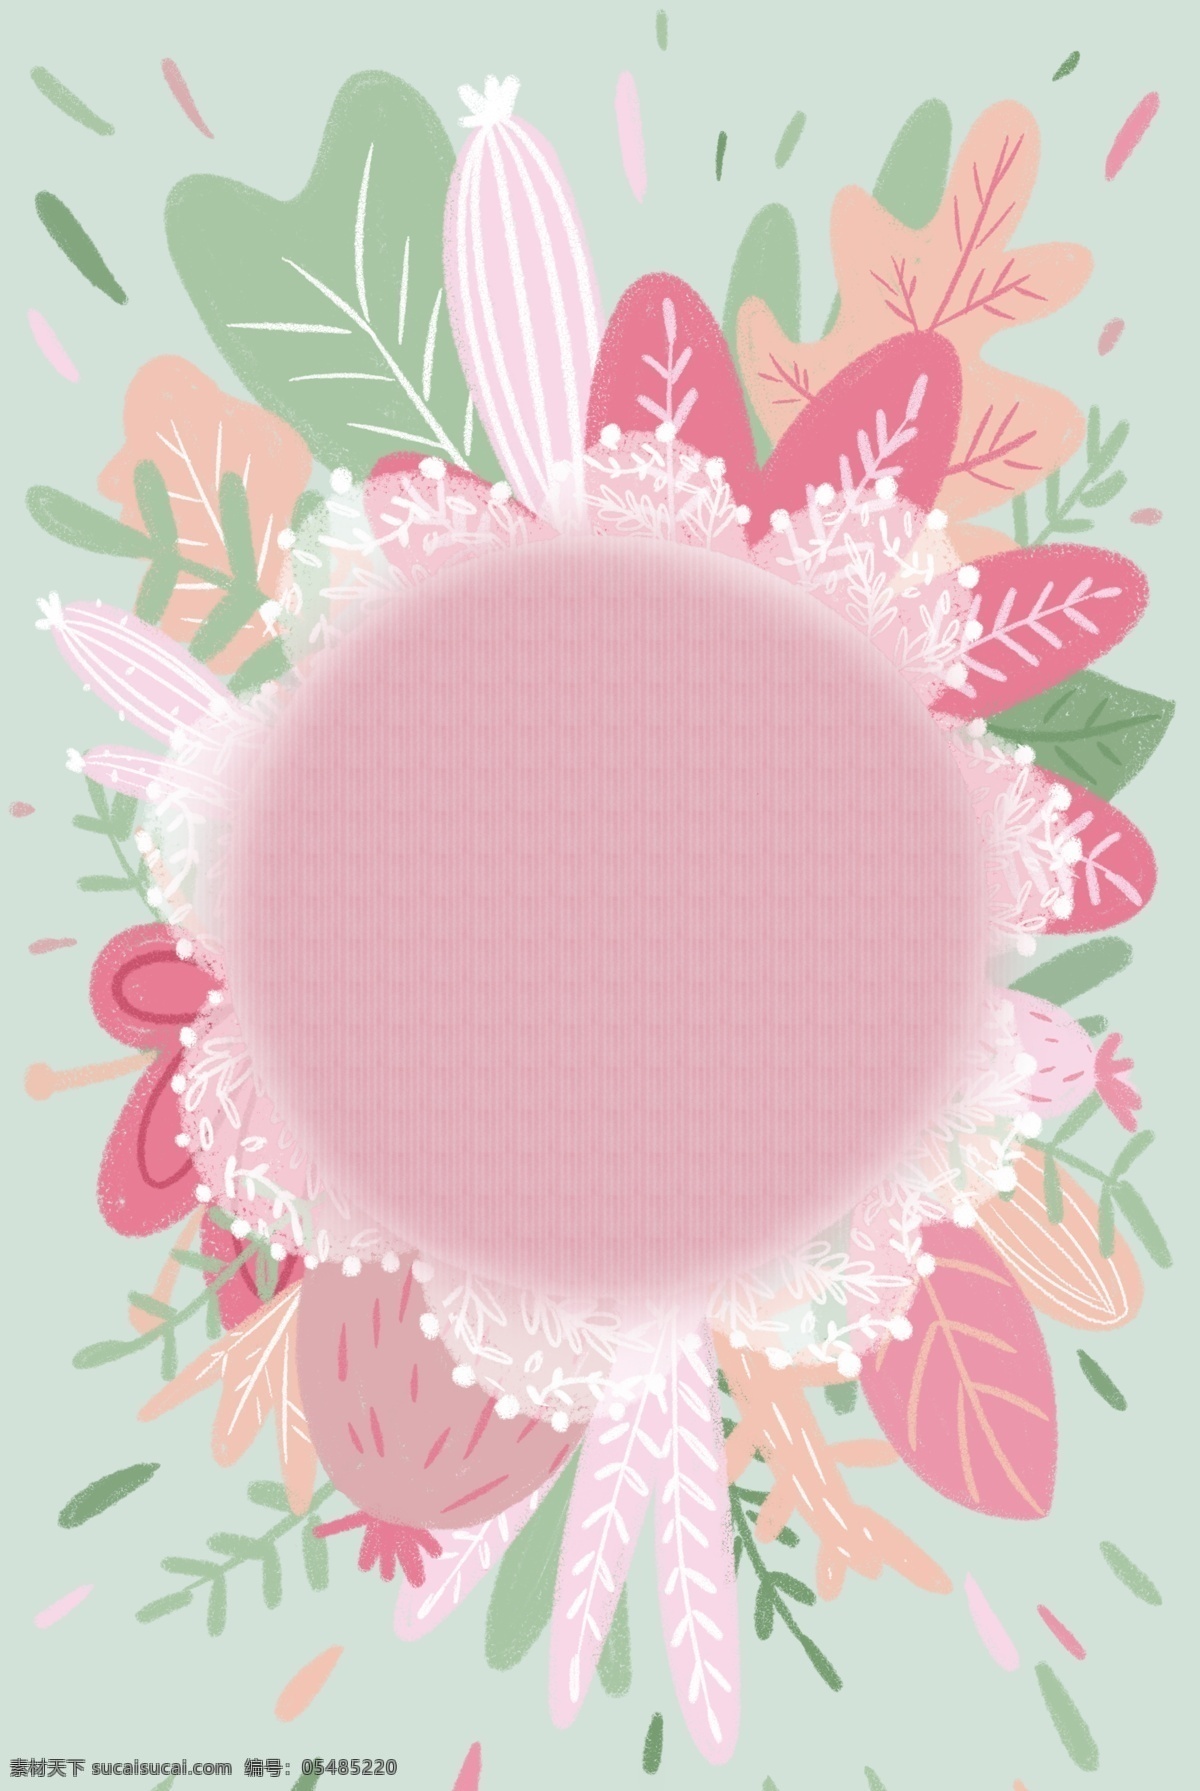 母亲节 花卉 植物 边框 春天 温馨 粉色背景 水彩 清新 自然 绿色 素雅